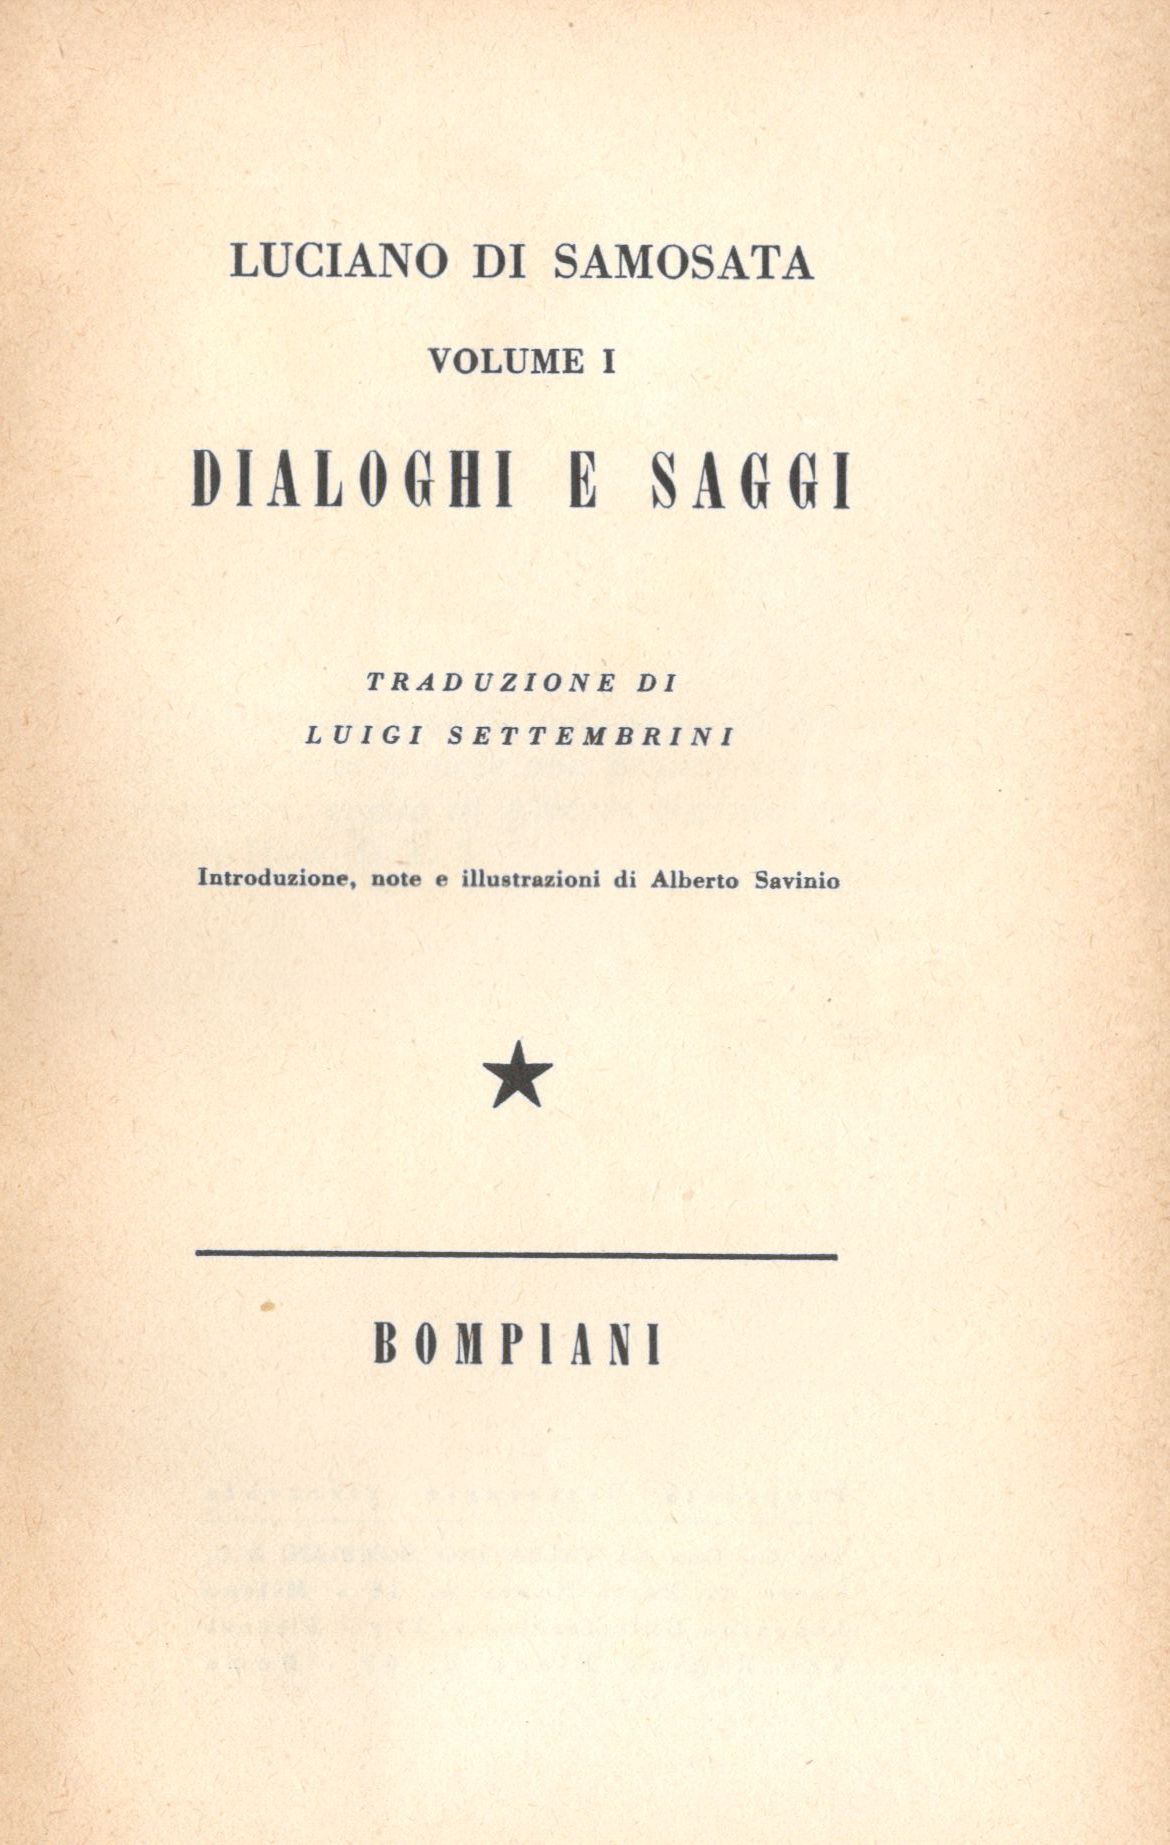 
Fig. 1 Frontespizio dei Dialoghi e saggi di Luciano di Samosata (Bompiani, 1944)
